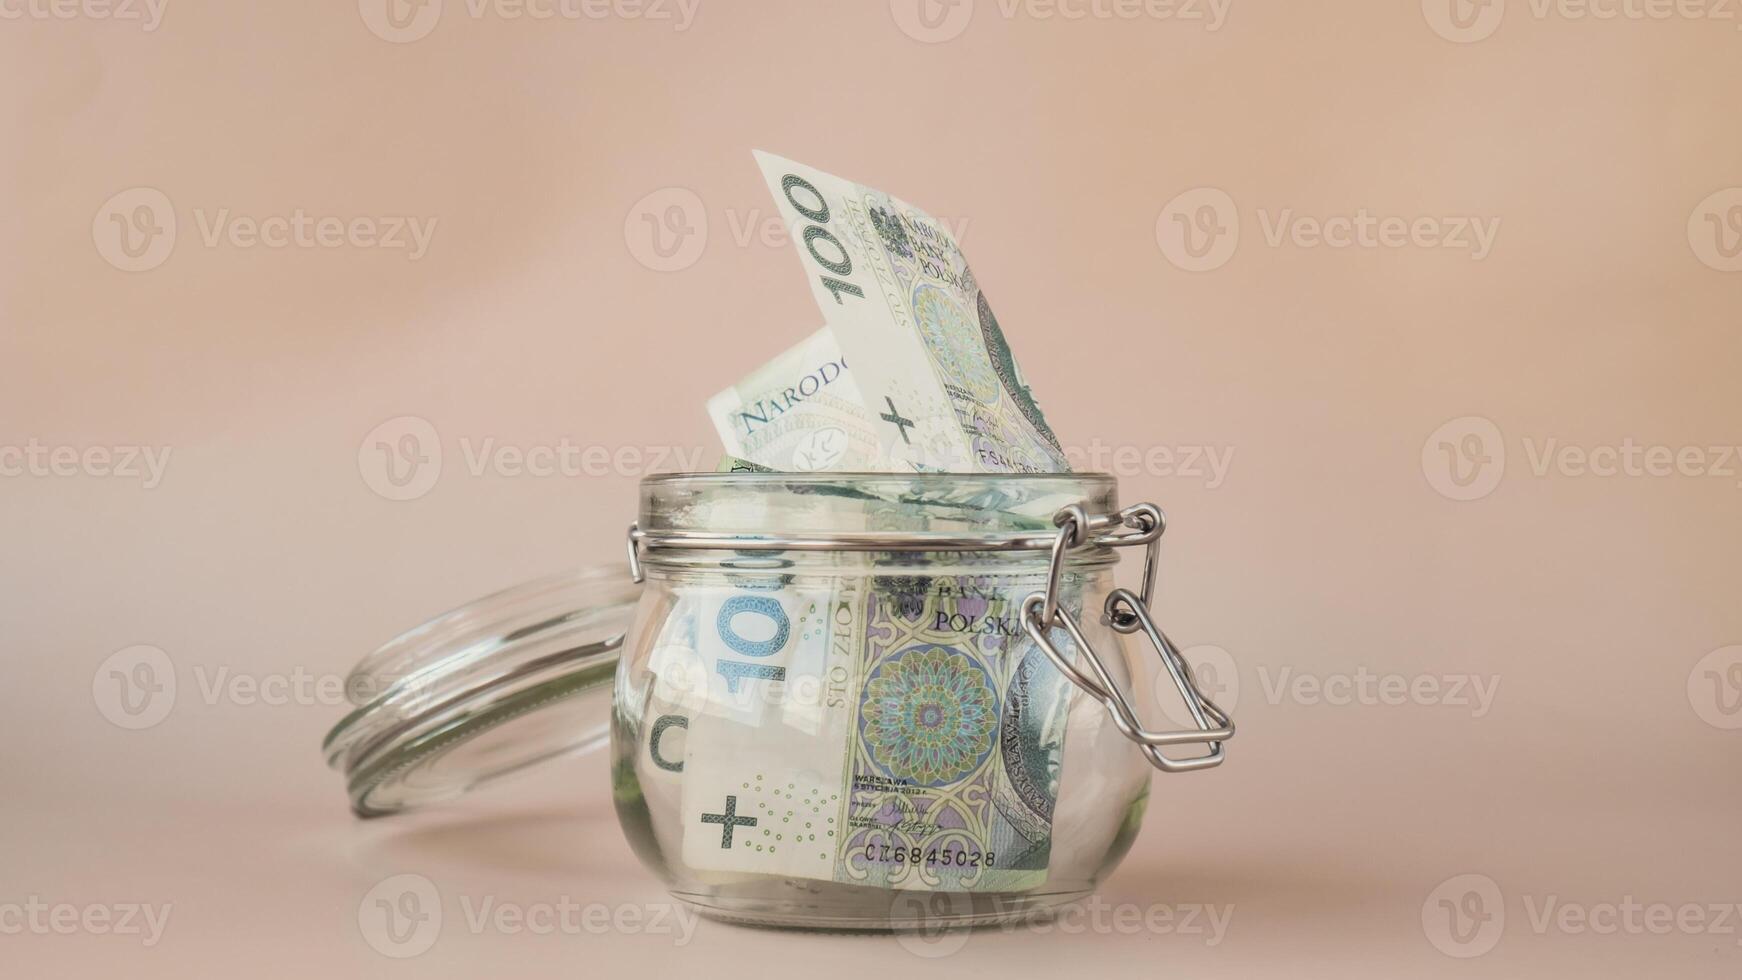 polacco zloty denaro contante banconota nel bicchiere vaso su beige sfondo. Salvataggio i soldi concetto crisi e inflazione consumo e economia raccolta i soldi. Consigli. extra i soldi, passivo copia spazio foto